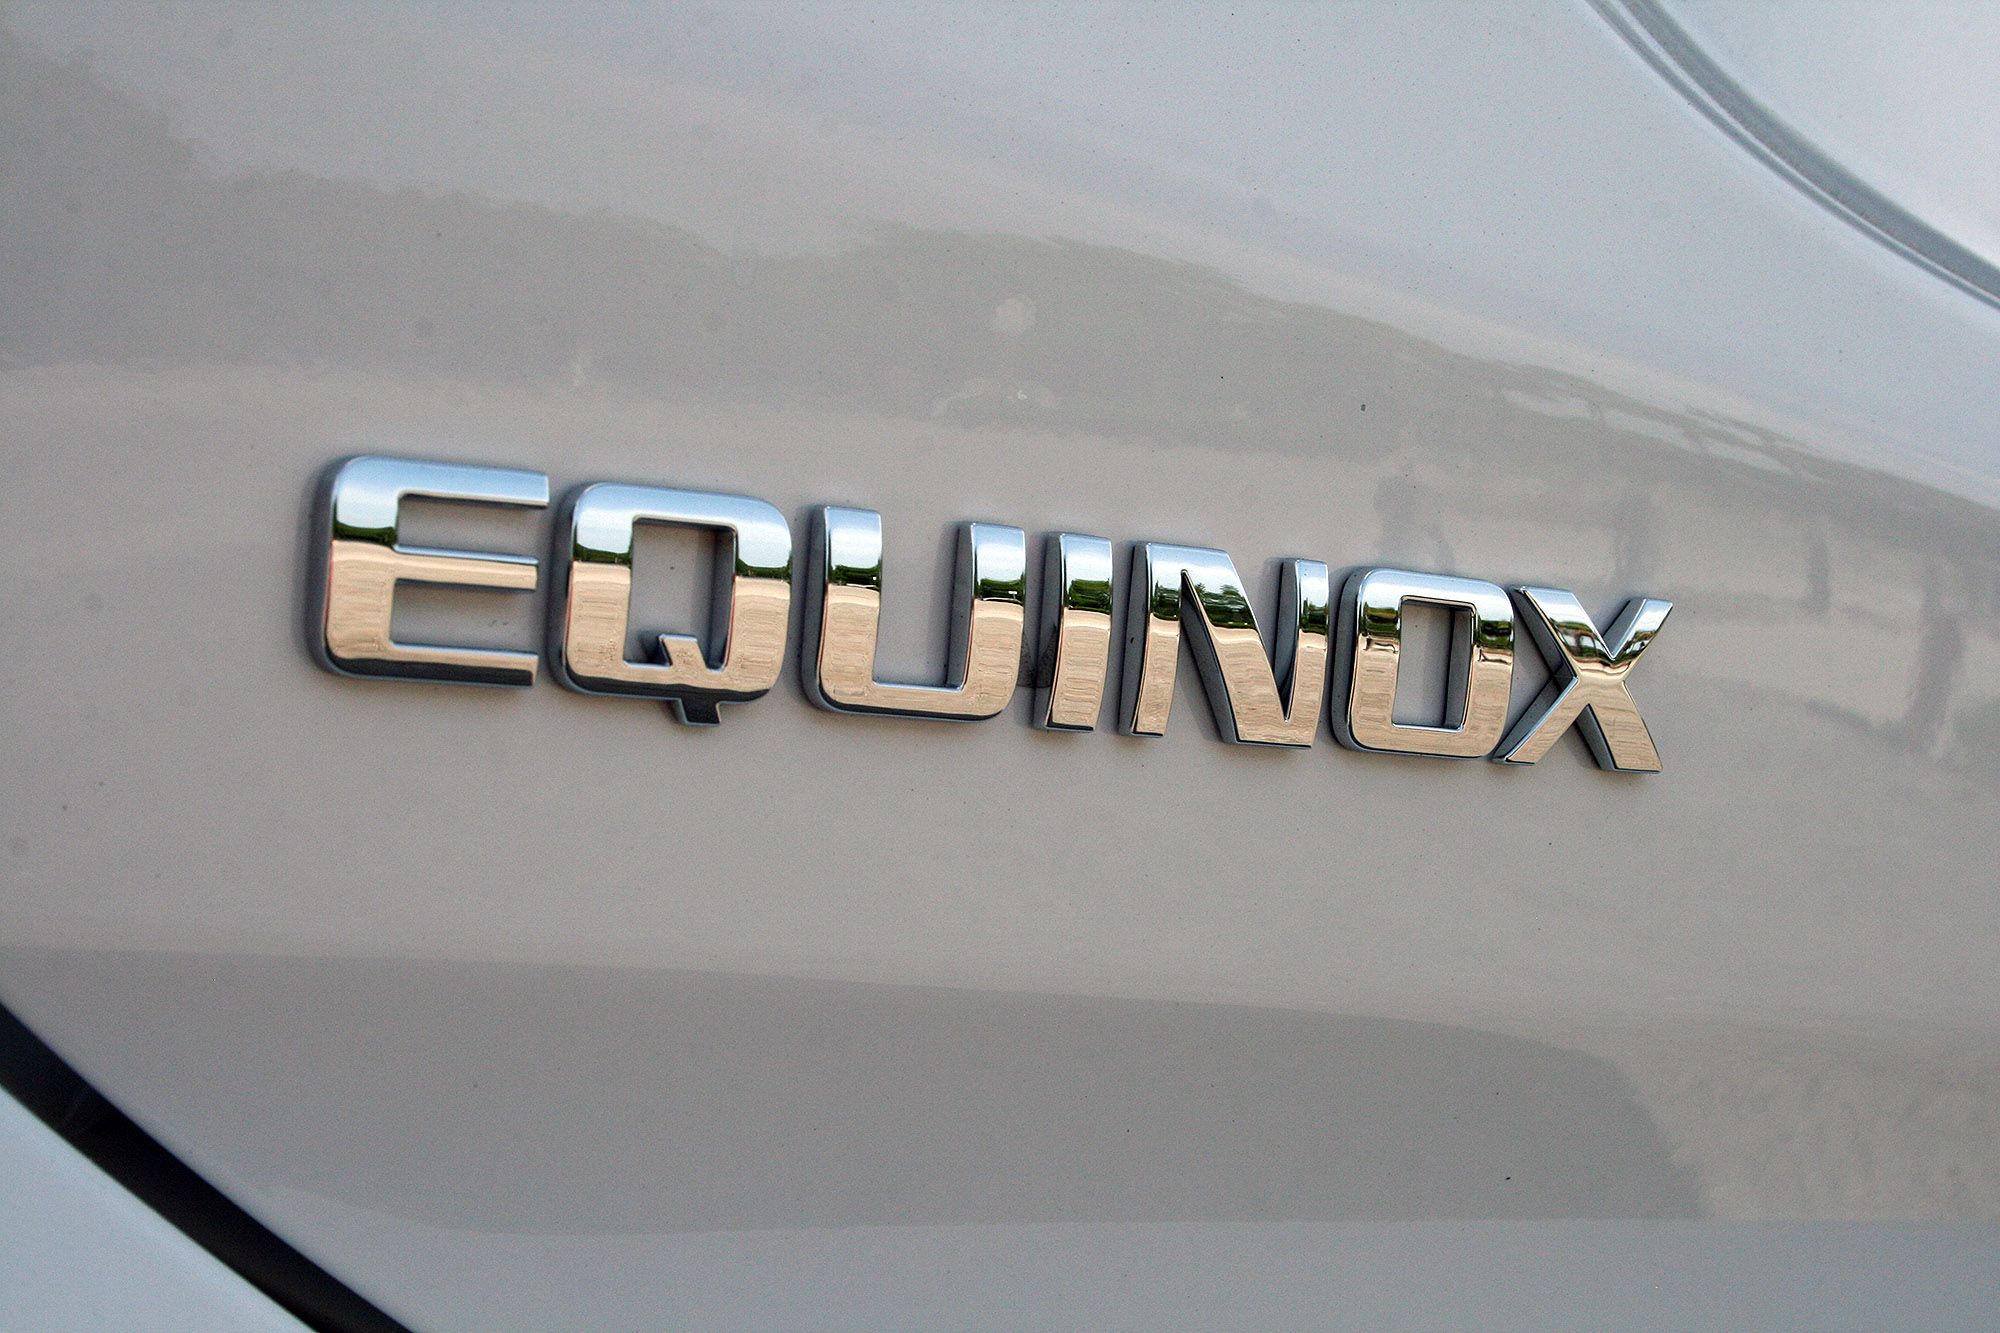 2018 Chevrolet Equinox – Driven